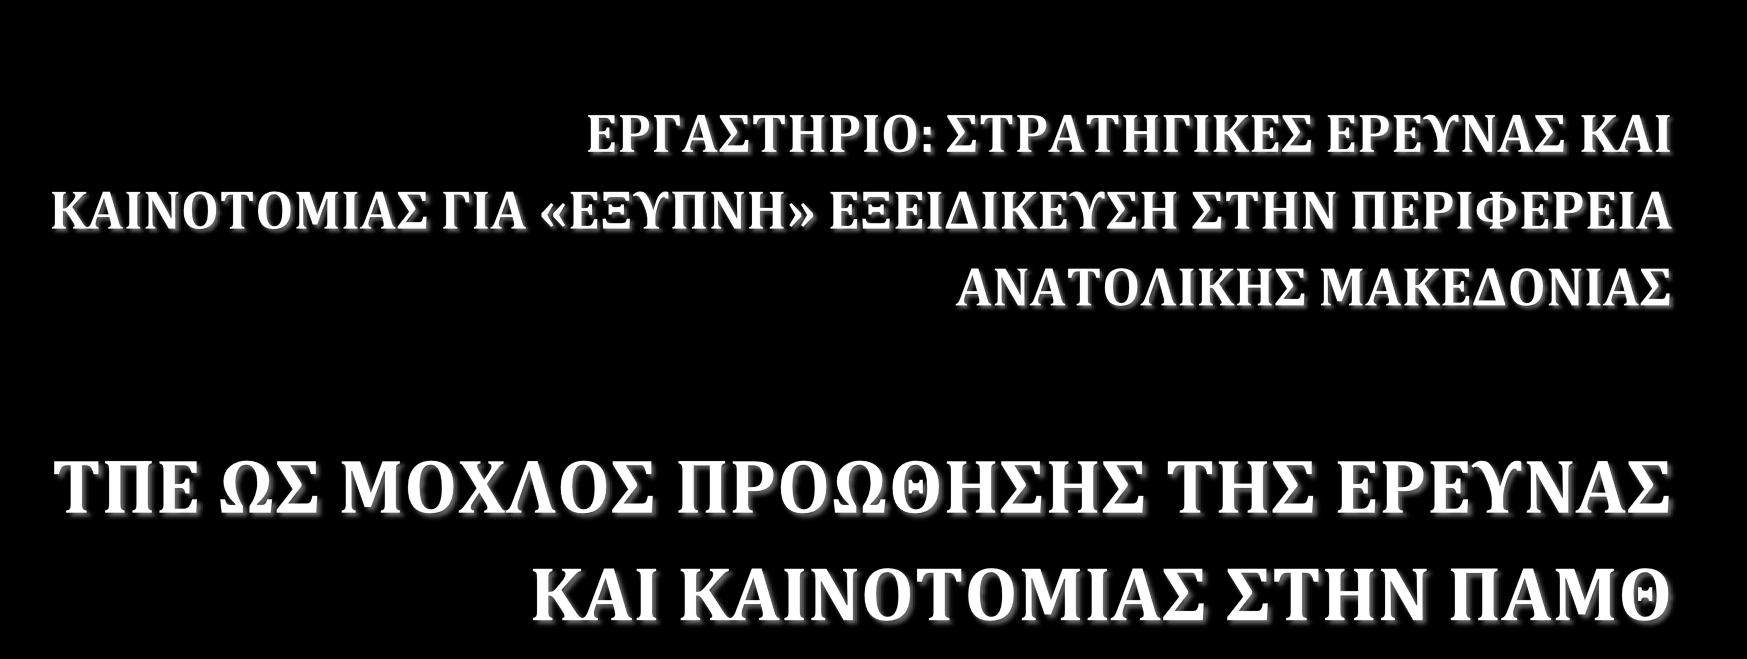 Χρήστος Εμμανουηλίδης και Κώστας Τζαμαλούκας «Αθηνά», Ερευνητικό Κέντρο Καινοτομίας